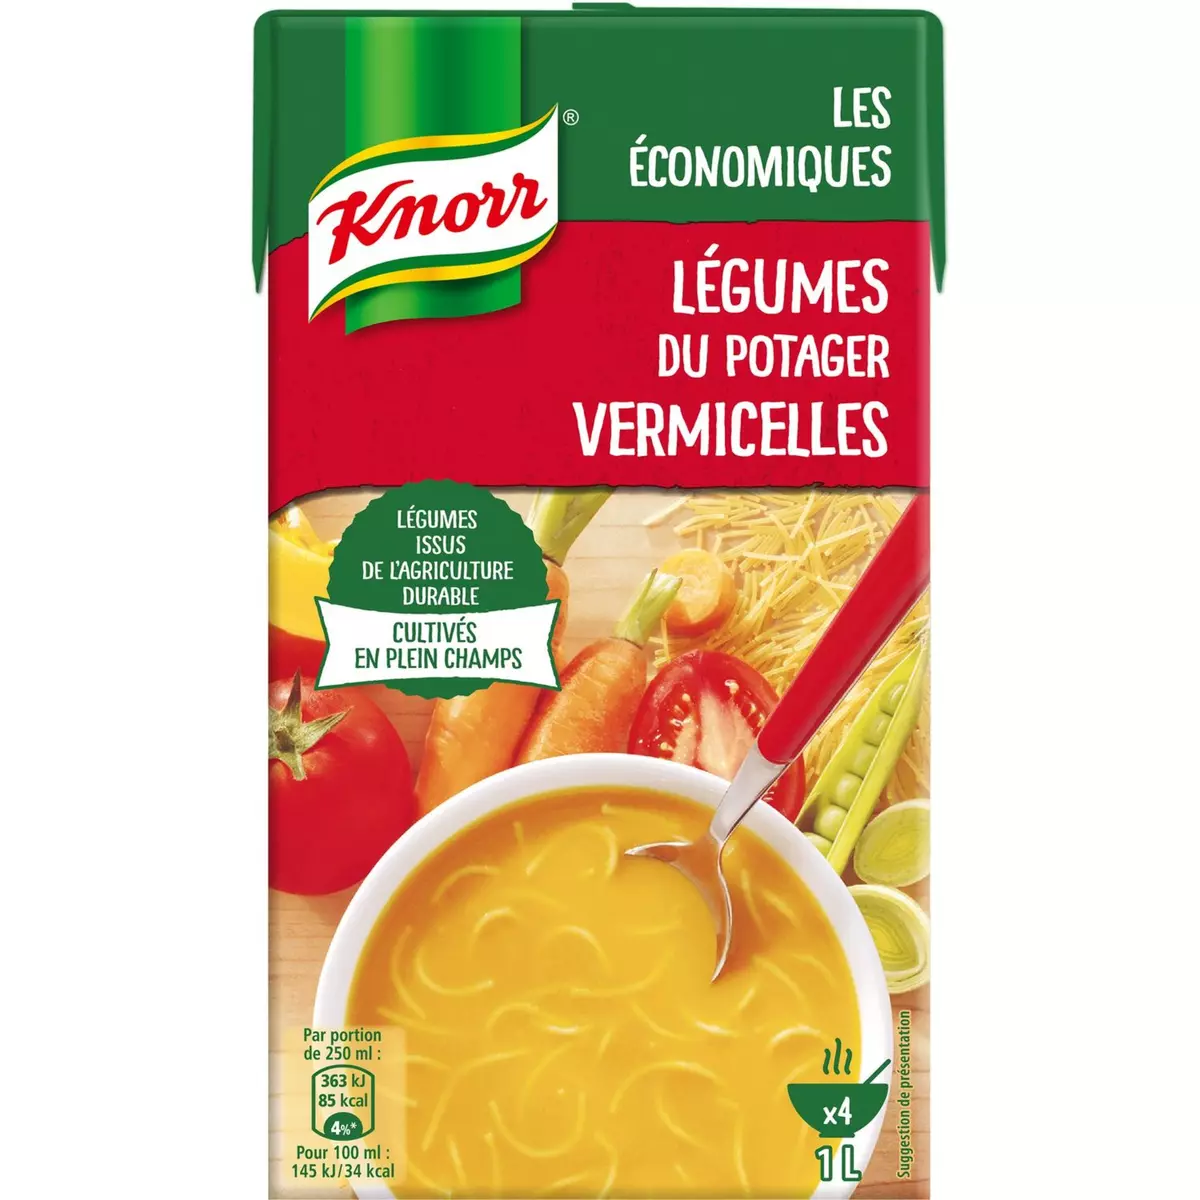 KNORR Knorr soupe légumes vermicelle 1l